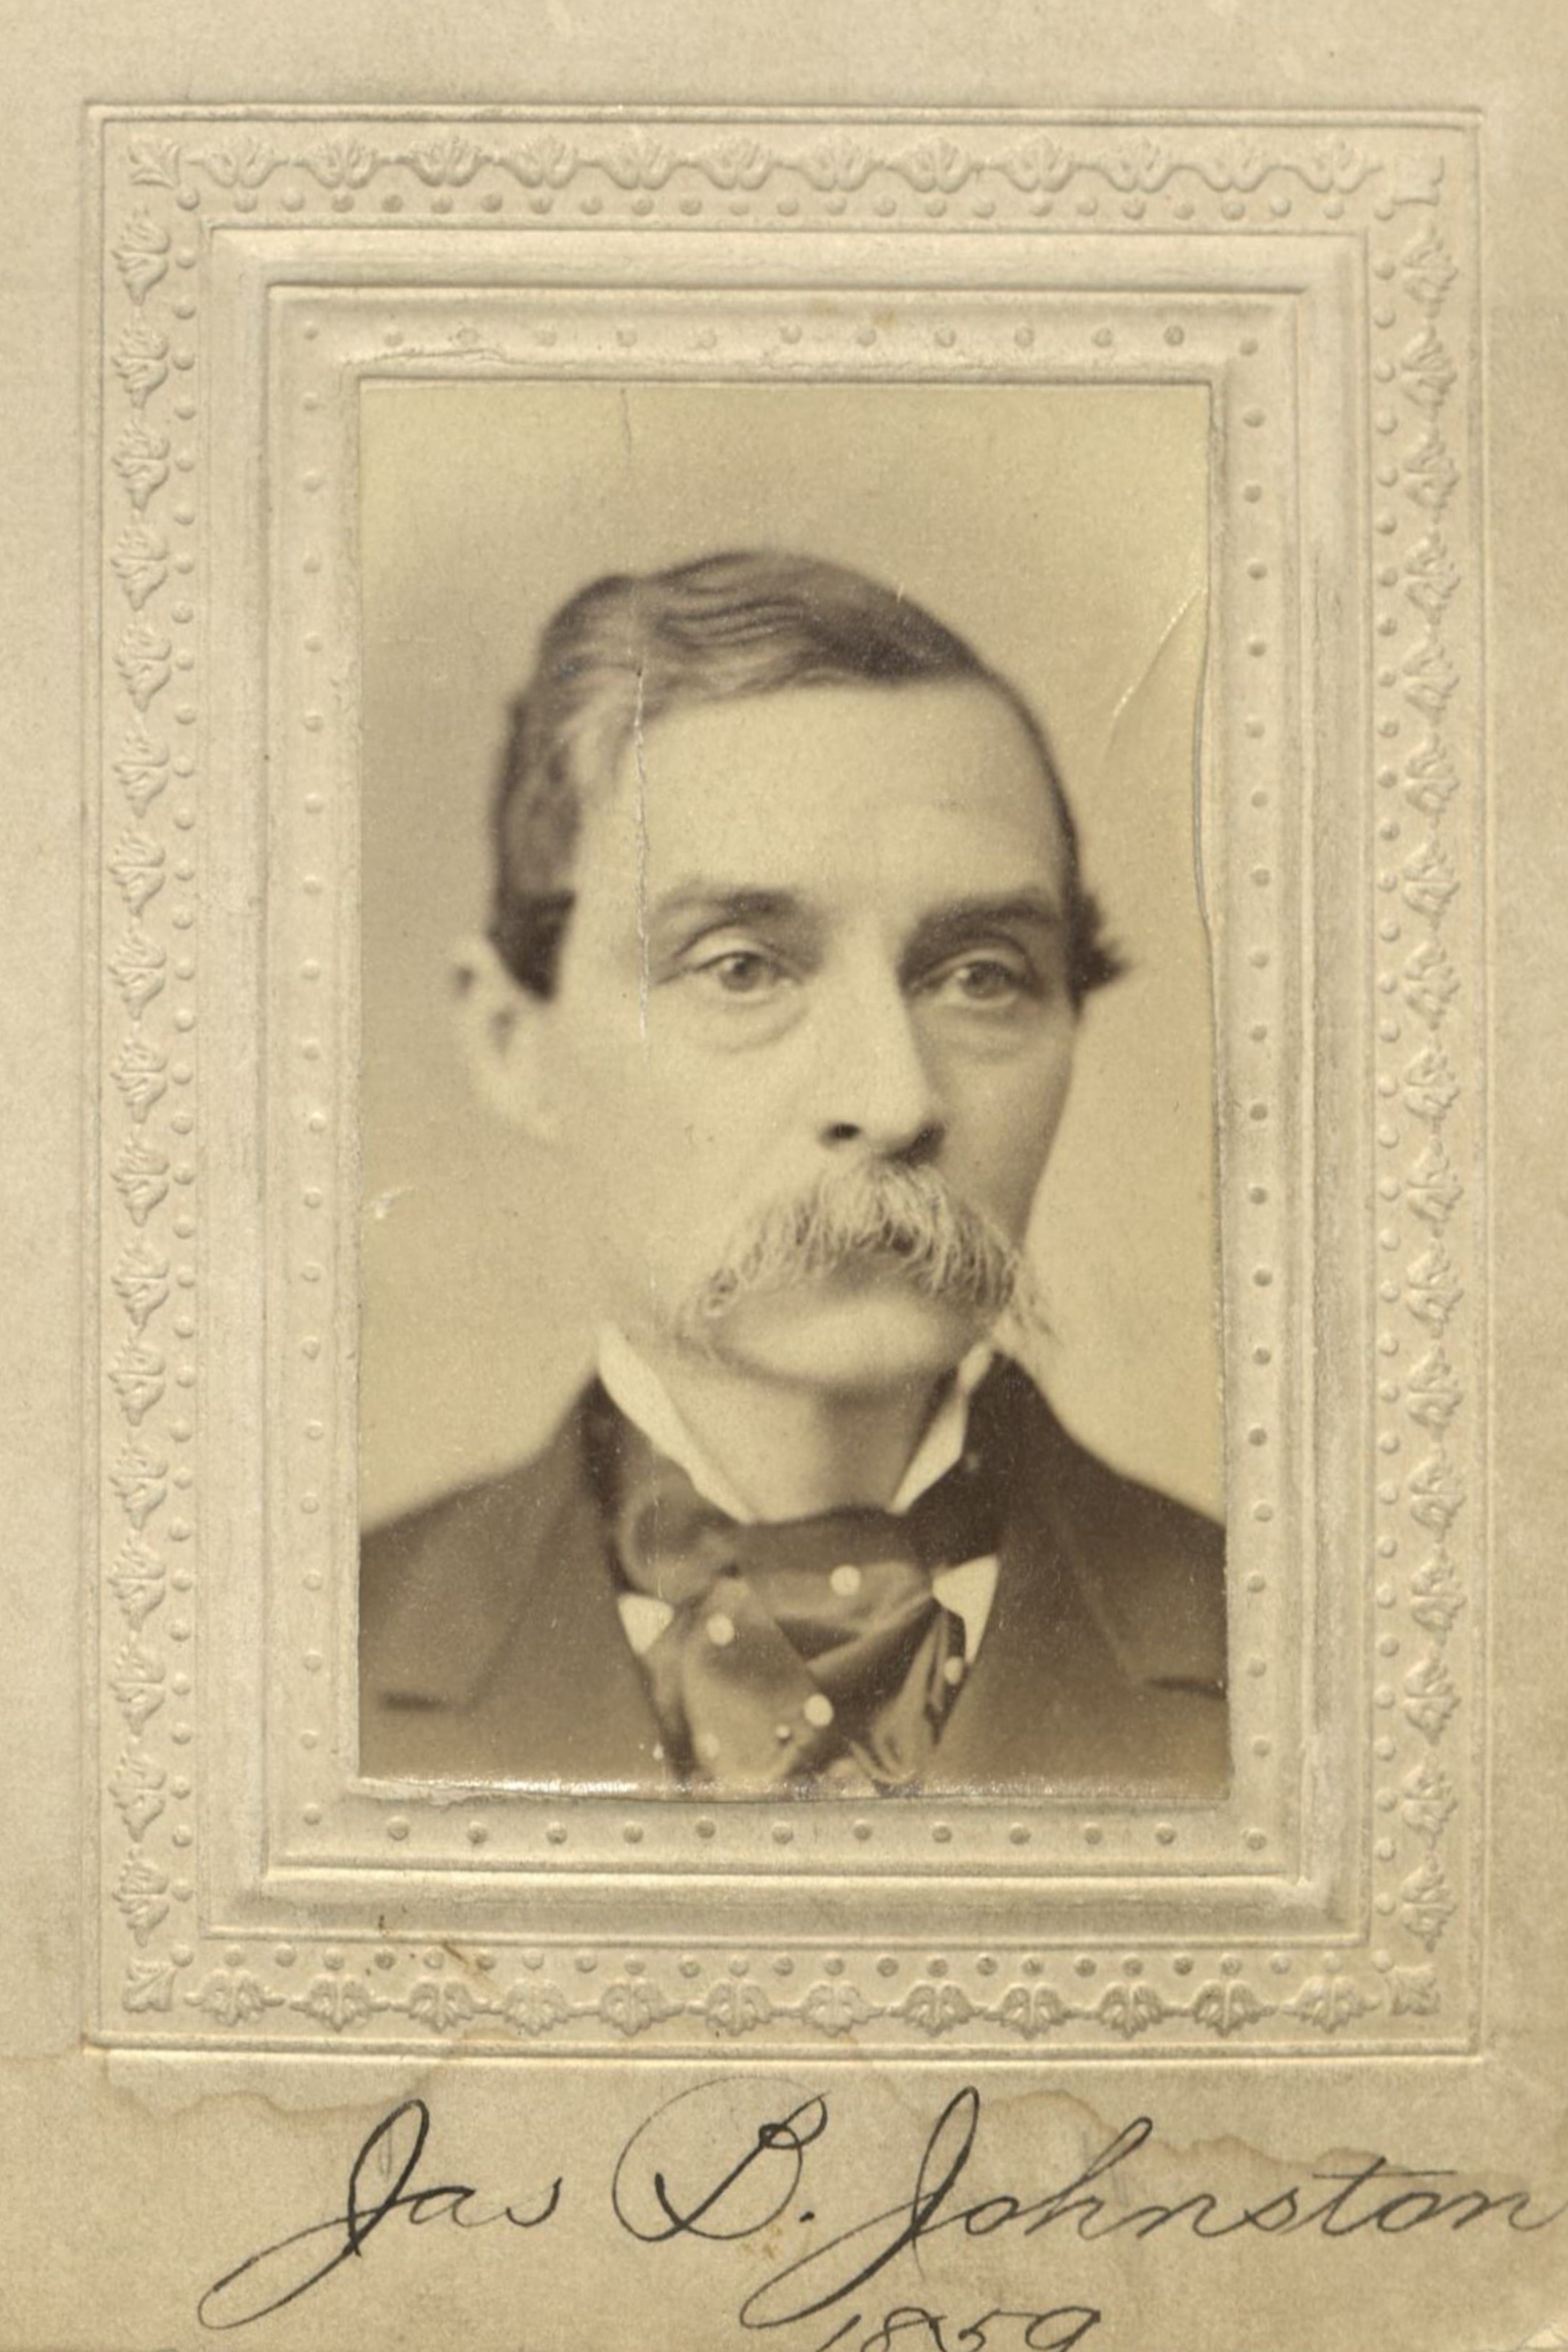 Member portrait of James B. Johnston